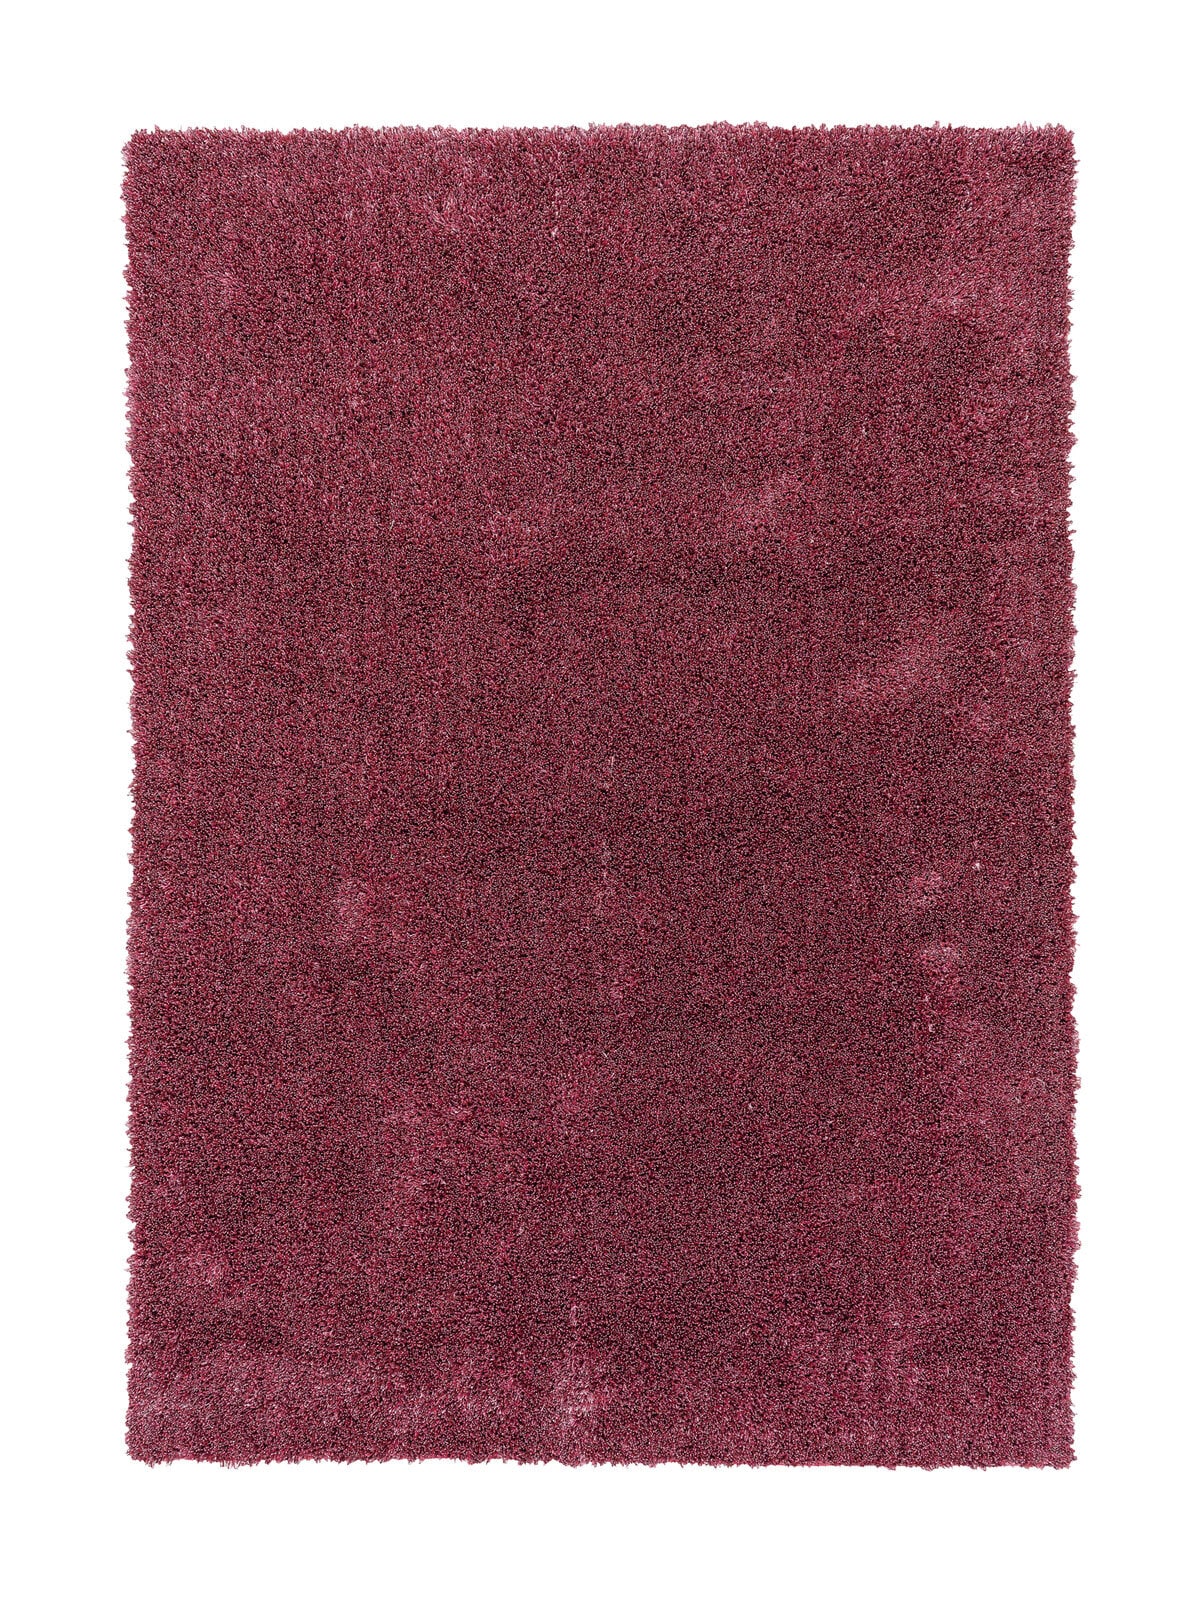 SCHÖNER WOHNEN-Kollektion Hochflorteppich NEW FEELING 140 x 200 cm rosa 